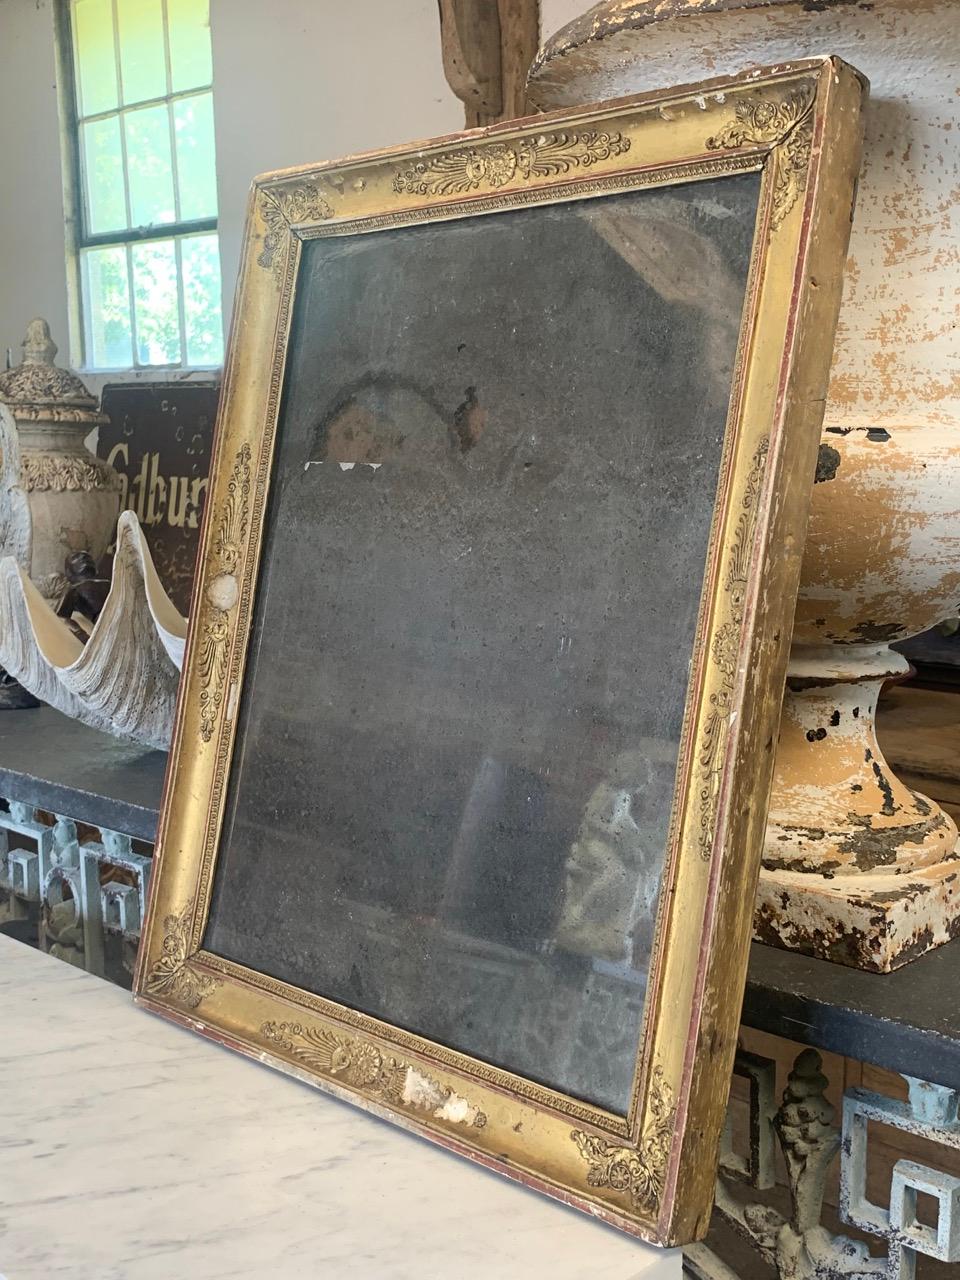 Eine schöne 19. Jahrhundert Französisch vergoldet gerahmt Spiegel in schönem Zustand mit Original-Glas Spiegelplatte stockfleckig. Der Rahmen aus Holz und Gesso hat schöne Abnutzungserscheinungen an der Vergoldung, was ihm ein sehr dekoratives